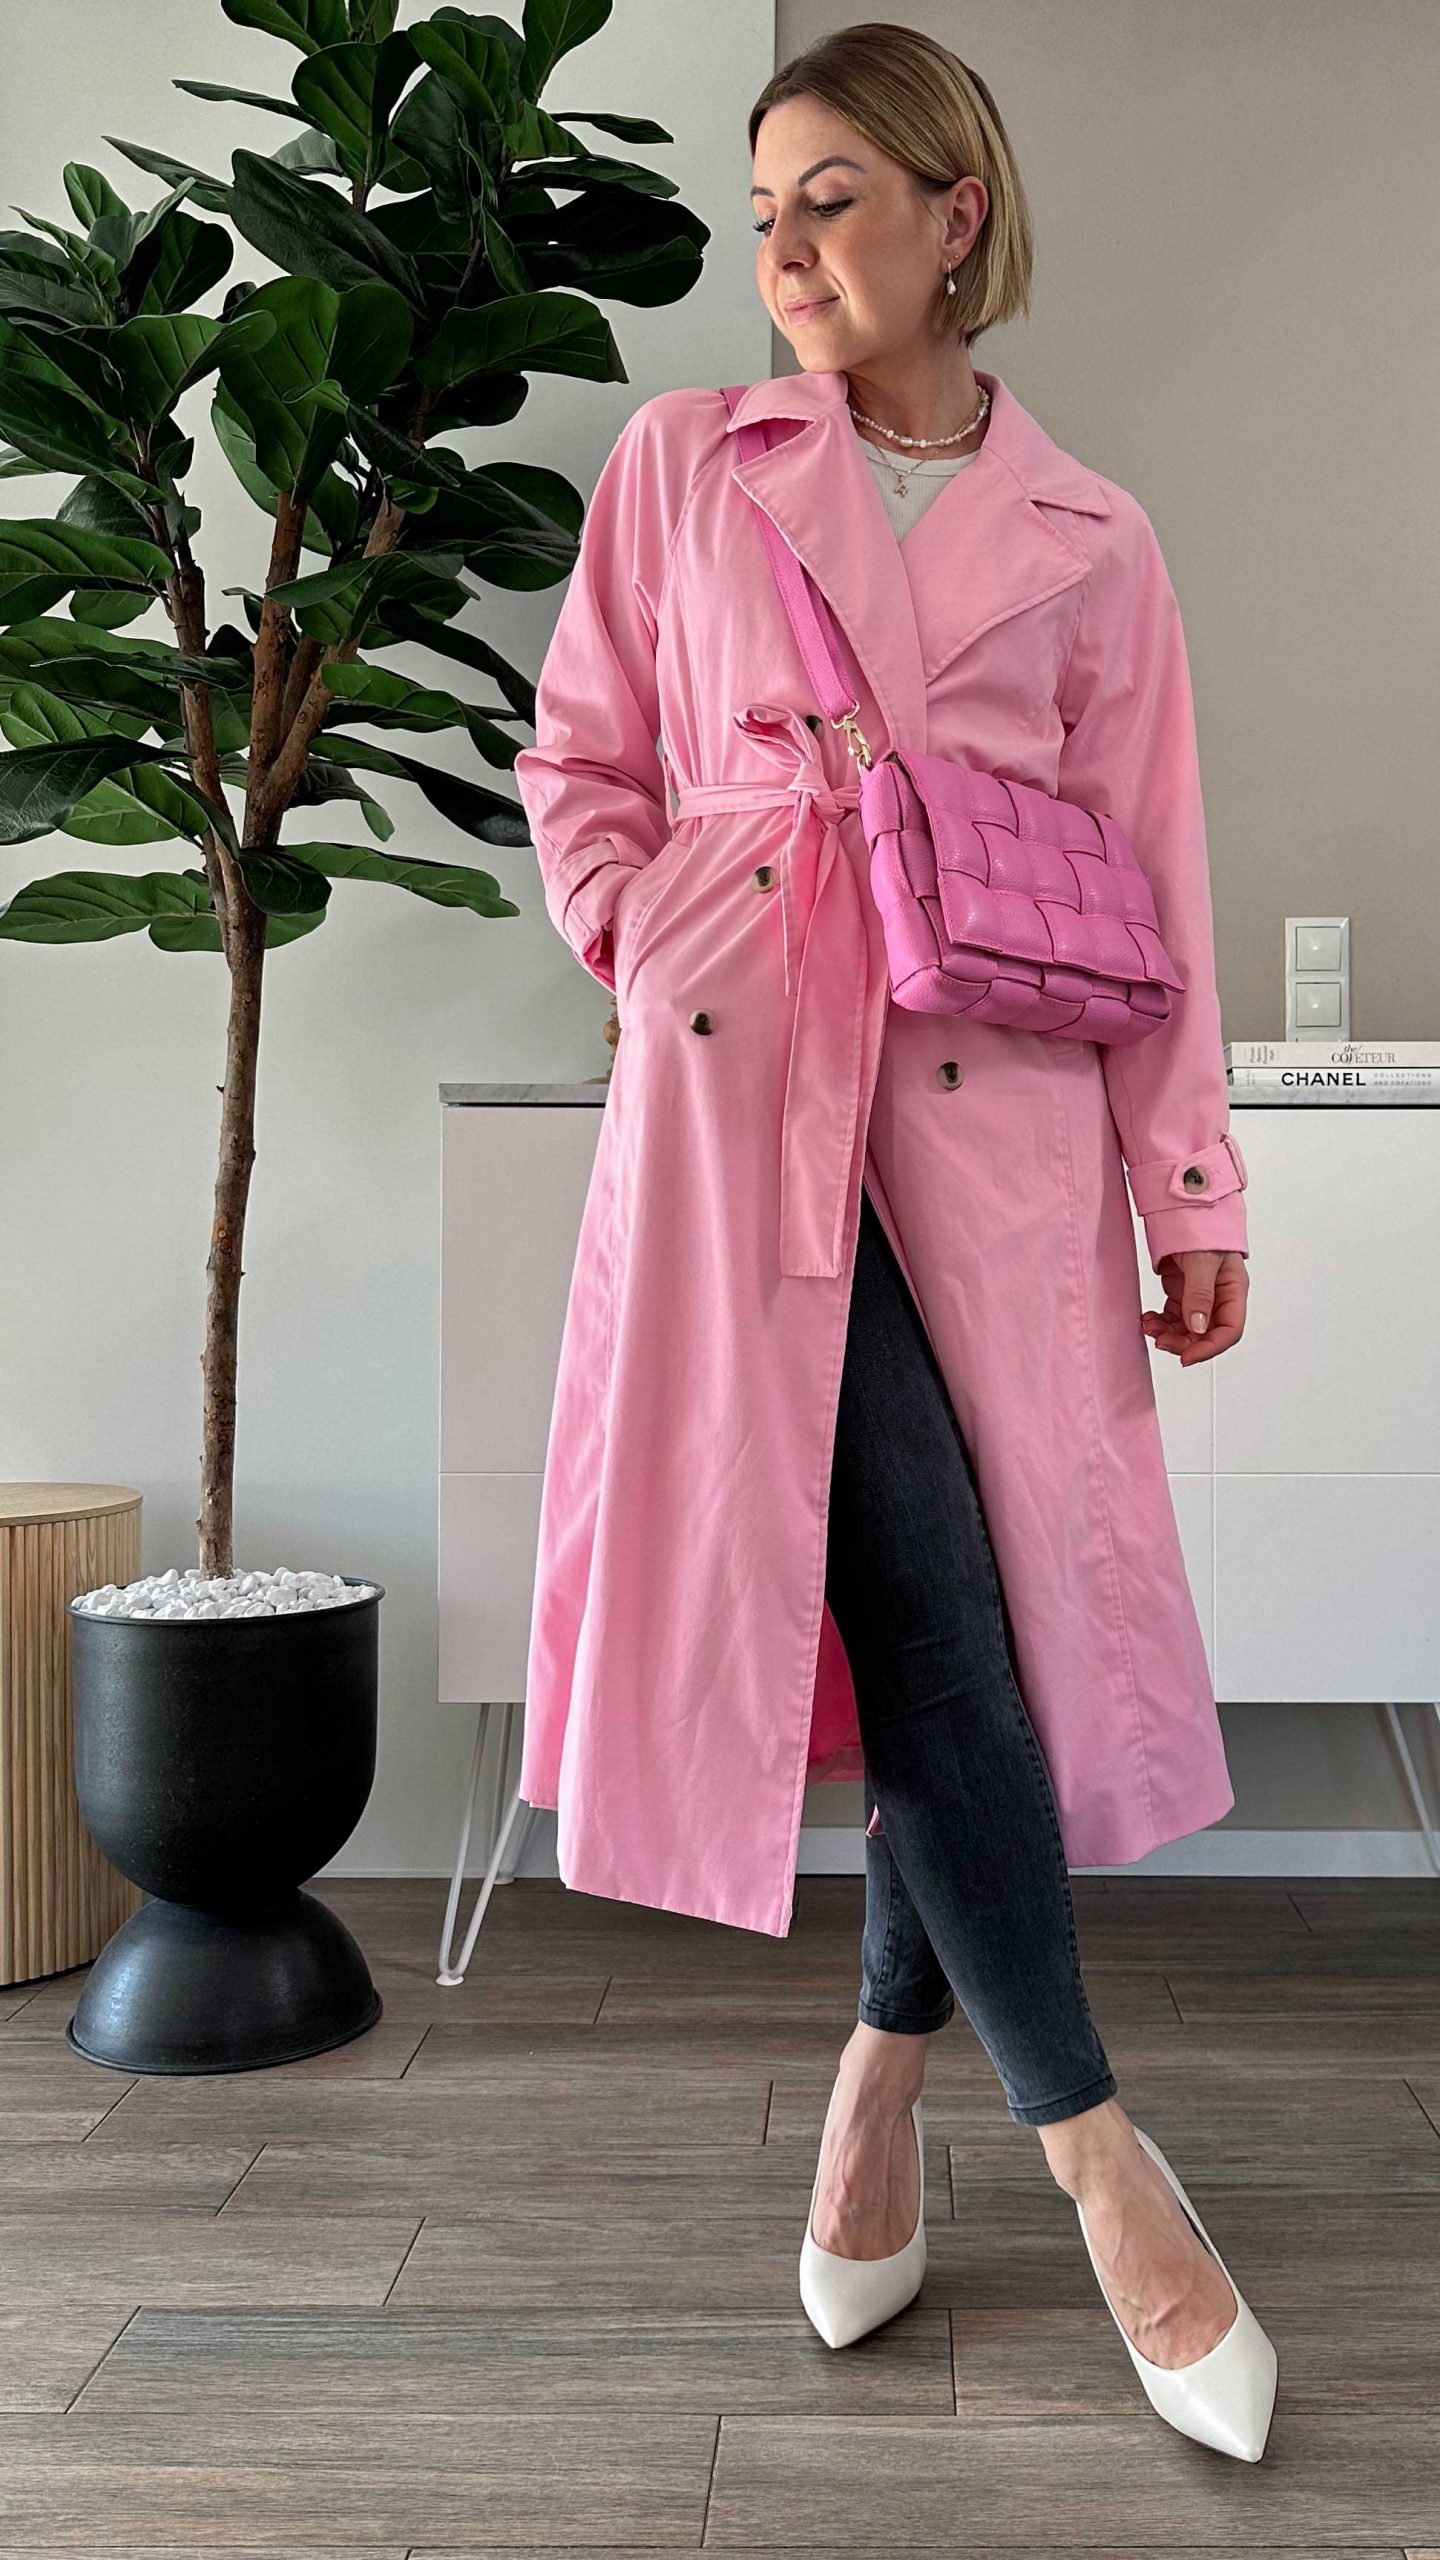 Einen rosa Trenchcoat kombinieren? Ich zeige dir dieses Frühlingsoutfit am Modeblog und stelle dir die Modetrends für das Frühjahr vor. www.whoismocca.com